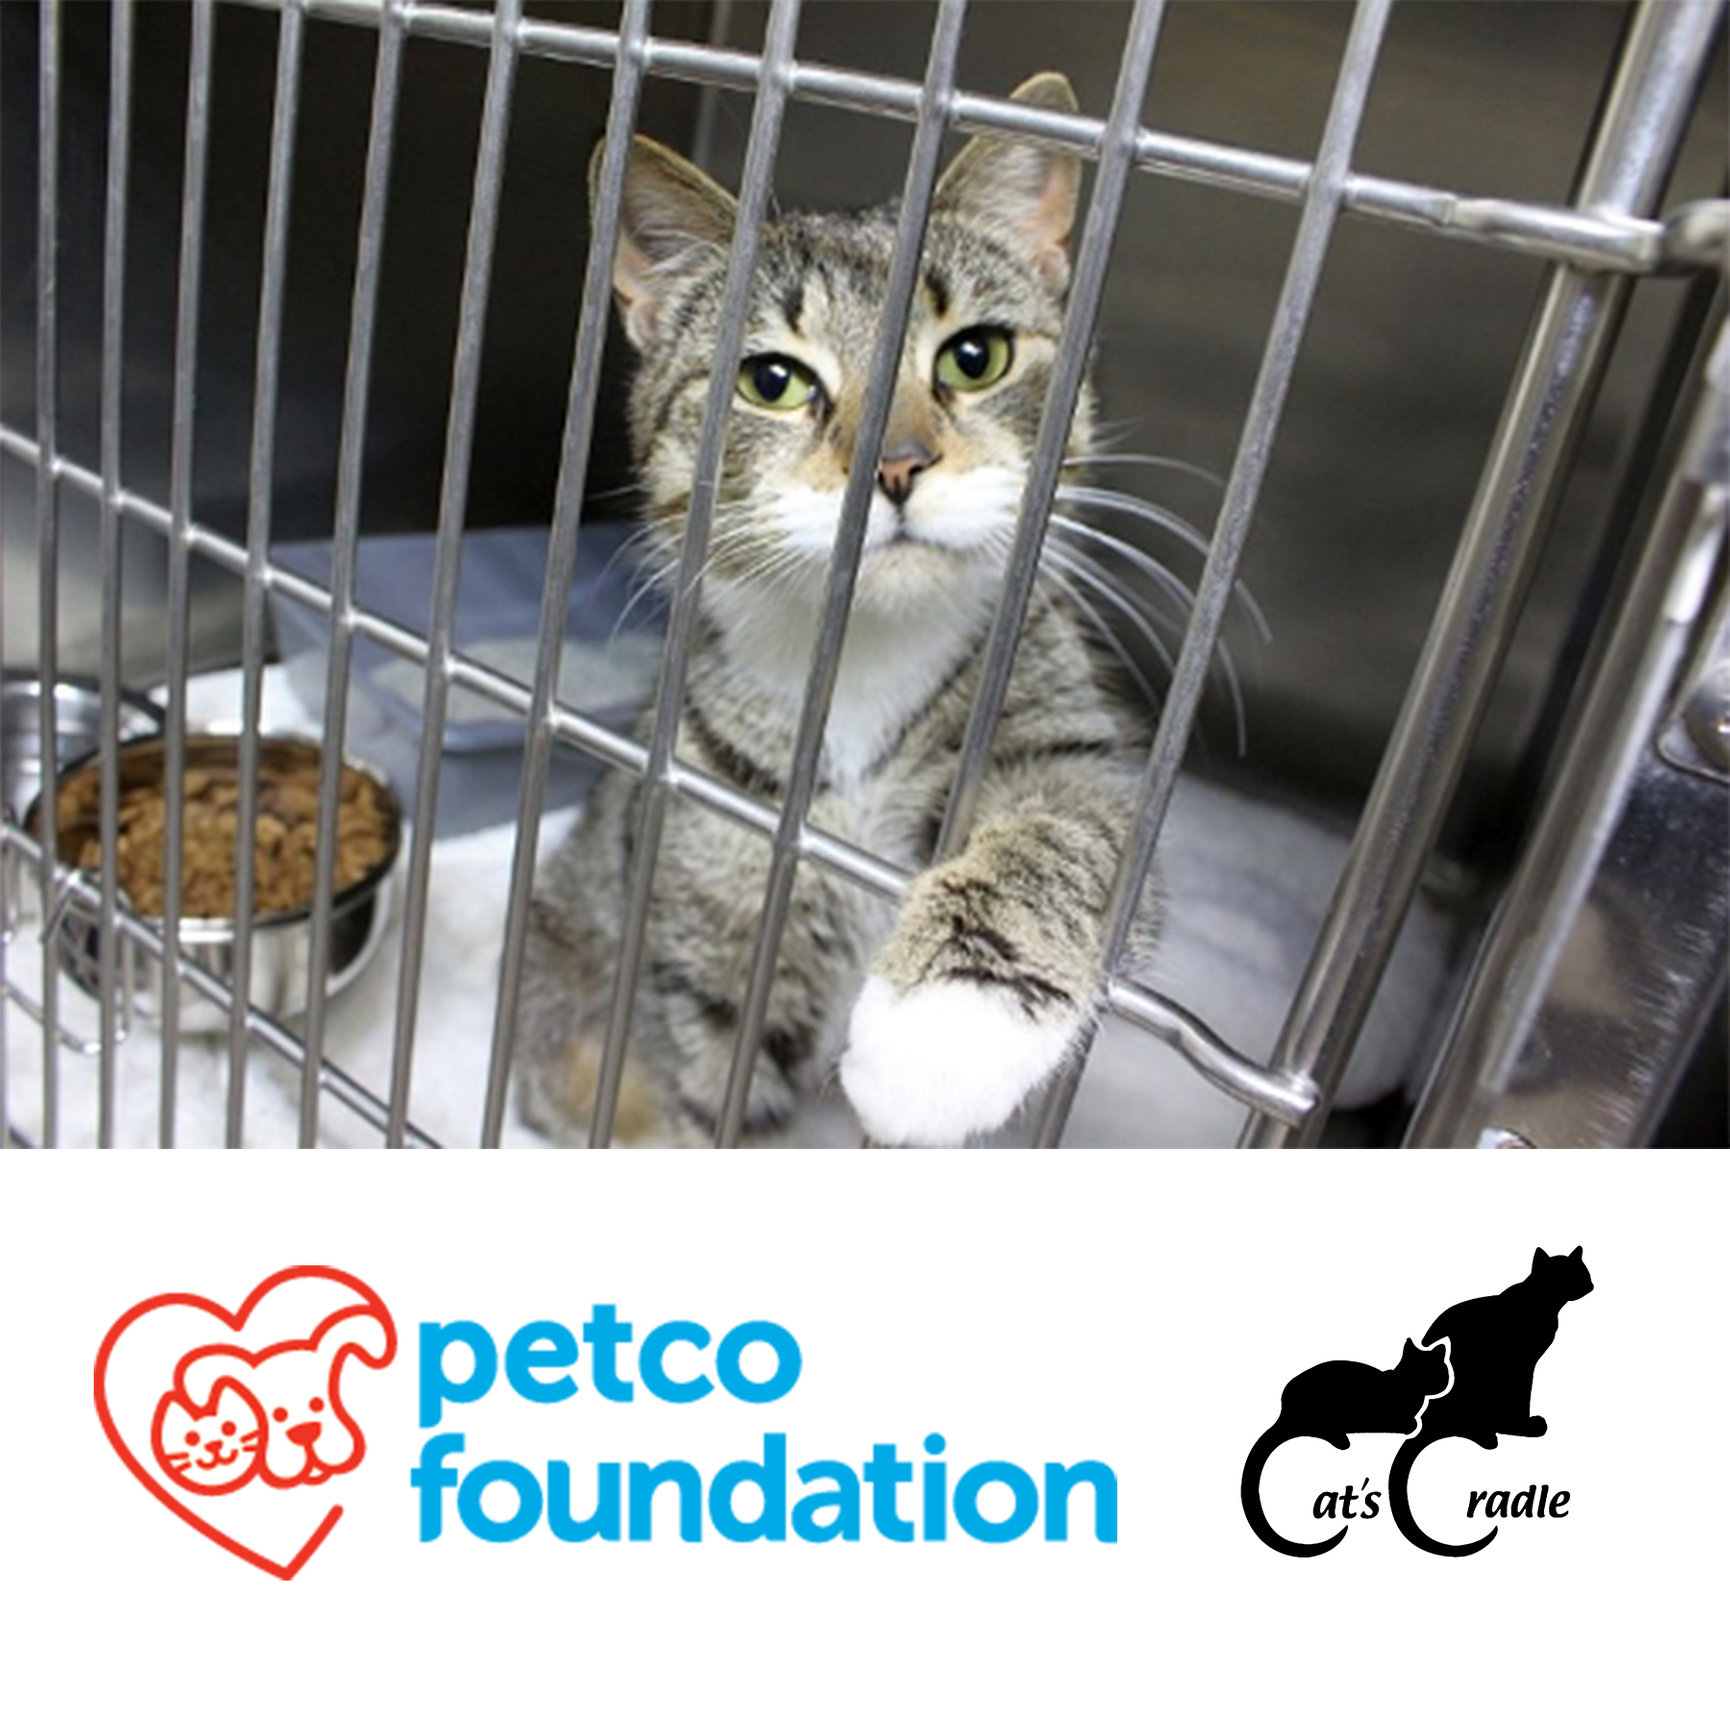 Petco Foundation Invests in Lifesaving Work of Cat's Cradle! Cat's Cradle